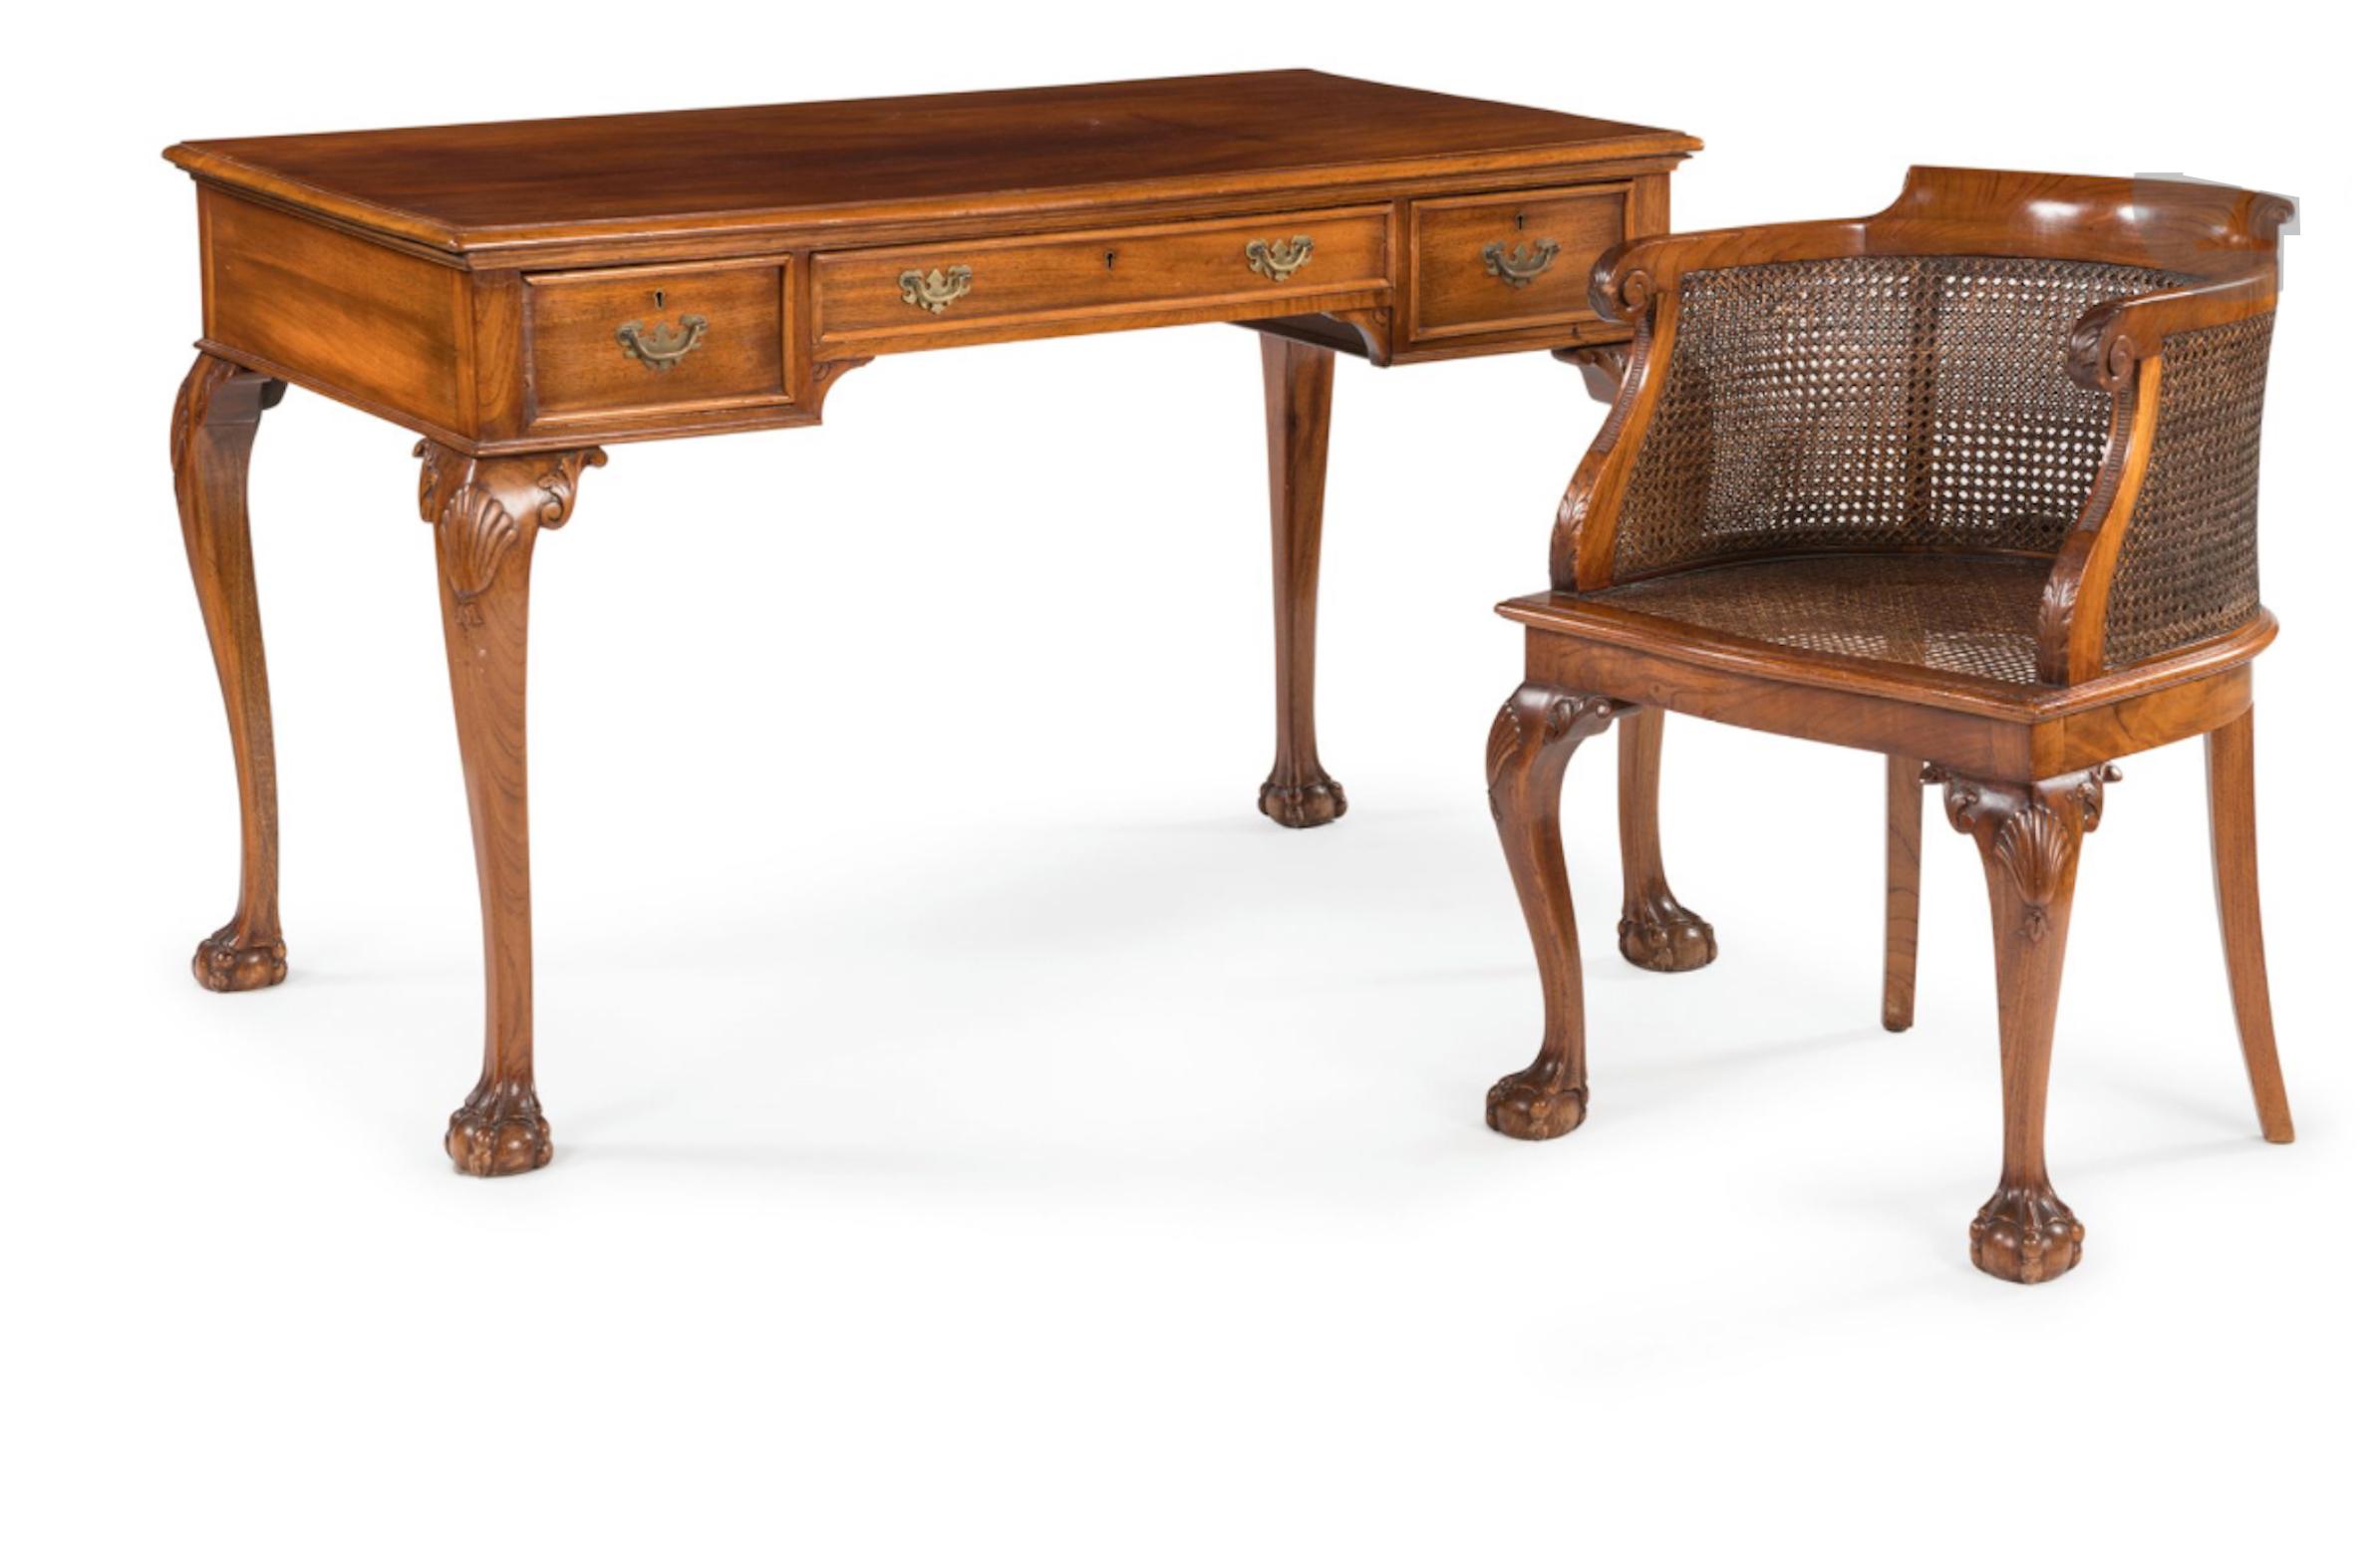 Handgeschnitzter Schreibtisch aus Nussbaumholz des 19. Jahrhunderts, der auf Löwentatzen ruht, mit drei Schubladen auf der Vorderseite und einem passenden Sessel mit Rohrgeflecht.
Sehr guter Originalzustand ohne jemals vorgenommene